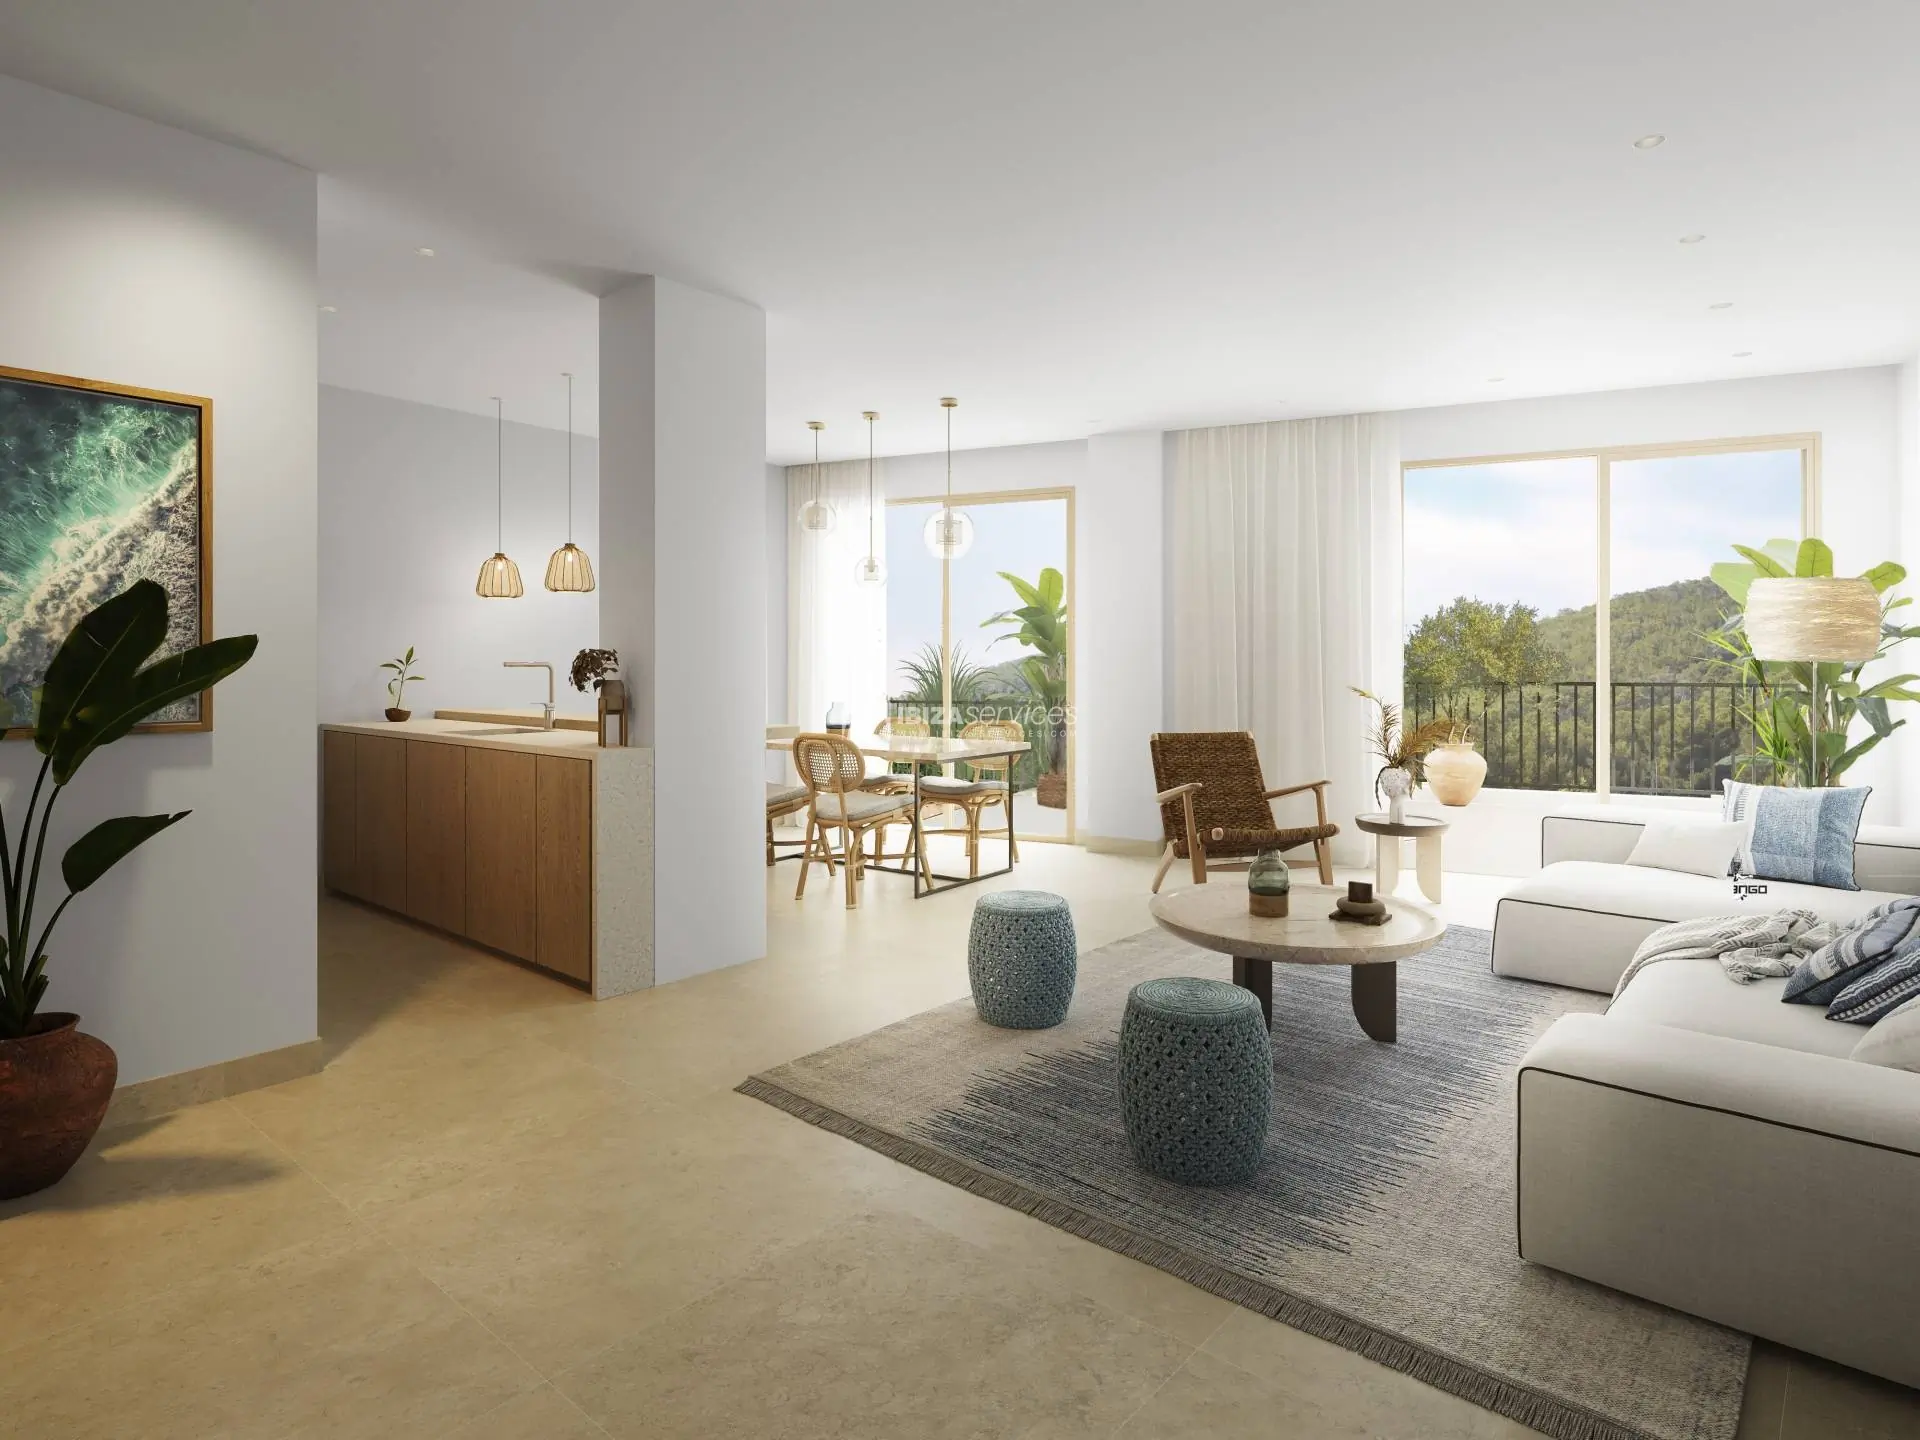 Neues Wohnprojekt mit 57 Häusern auf Ibiza, Santa Eulalia zu verkaufen